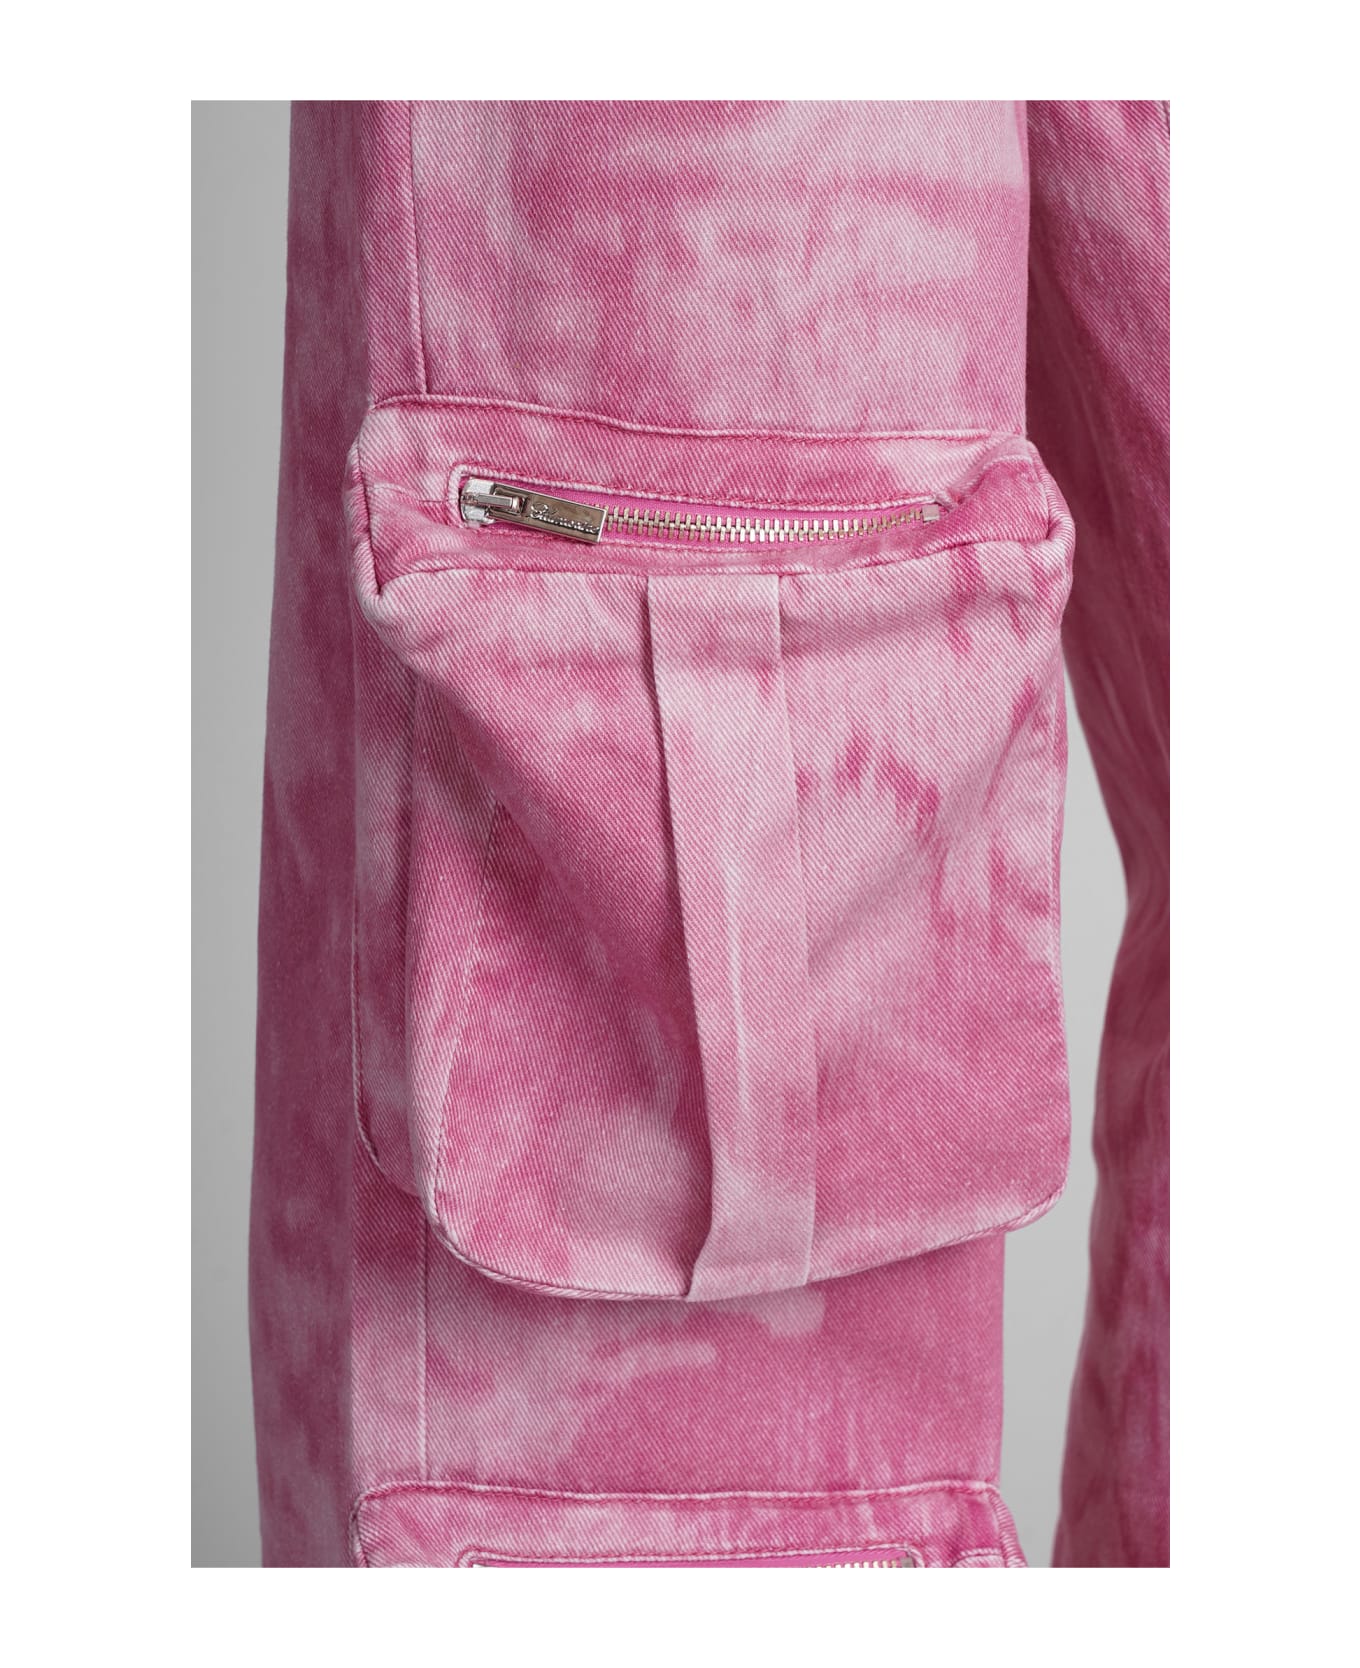 Blumarine Pants In Rose-pink Cotton - Pink ボトムス